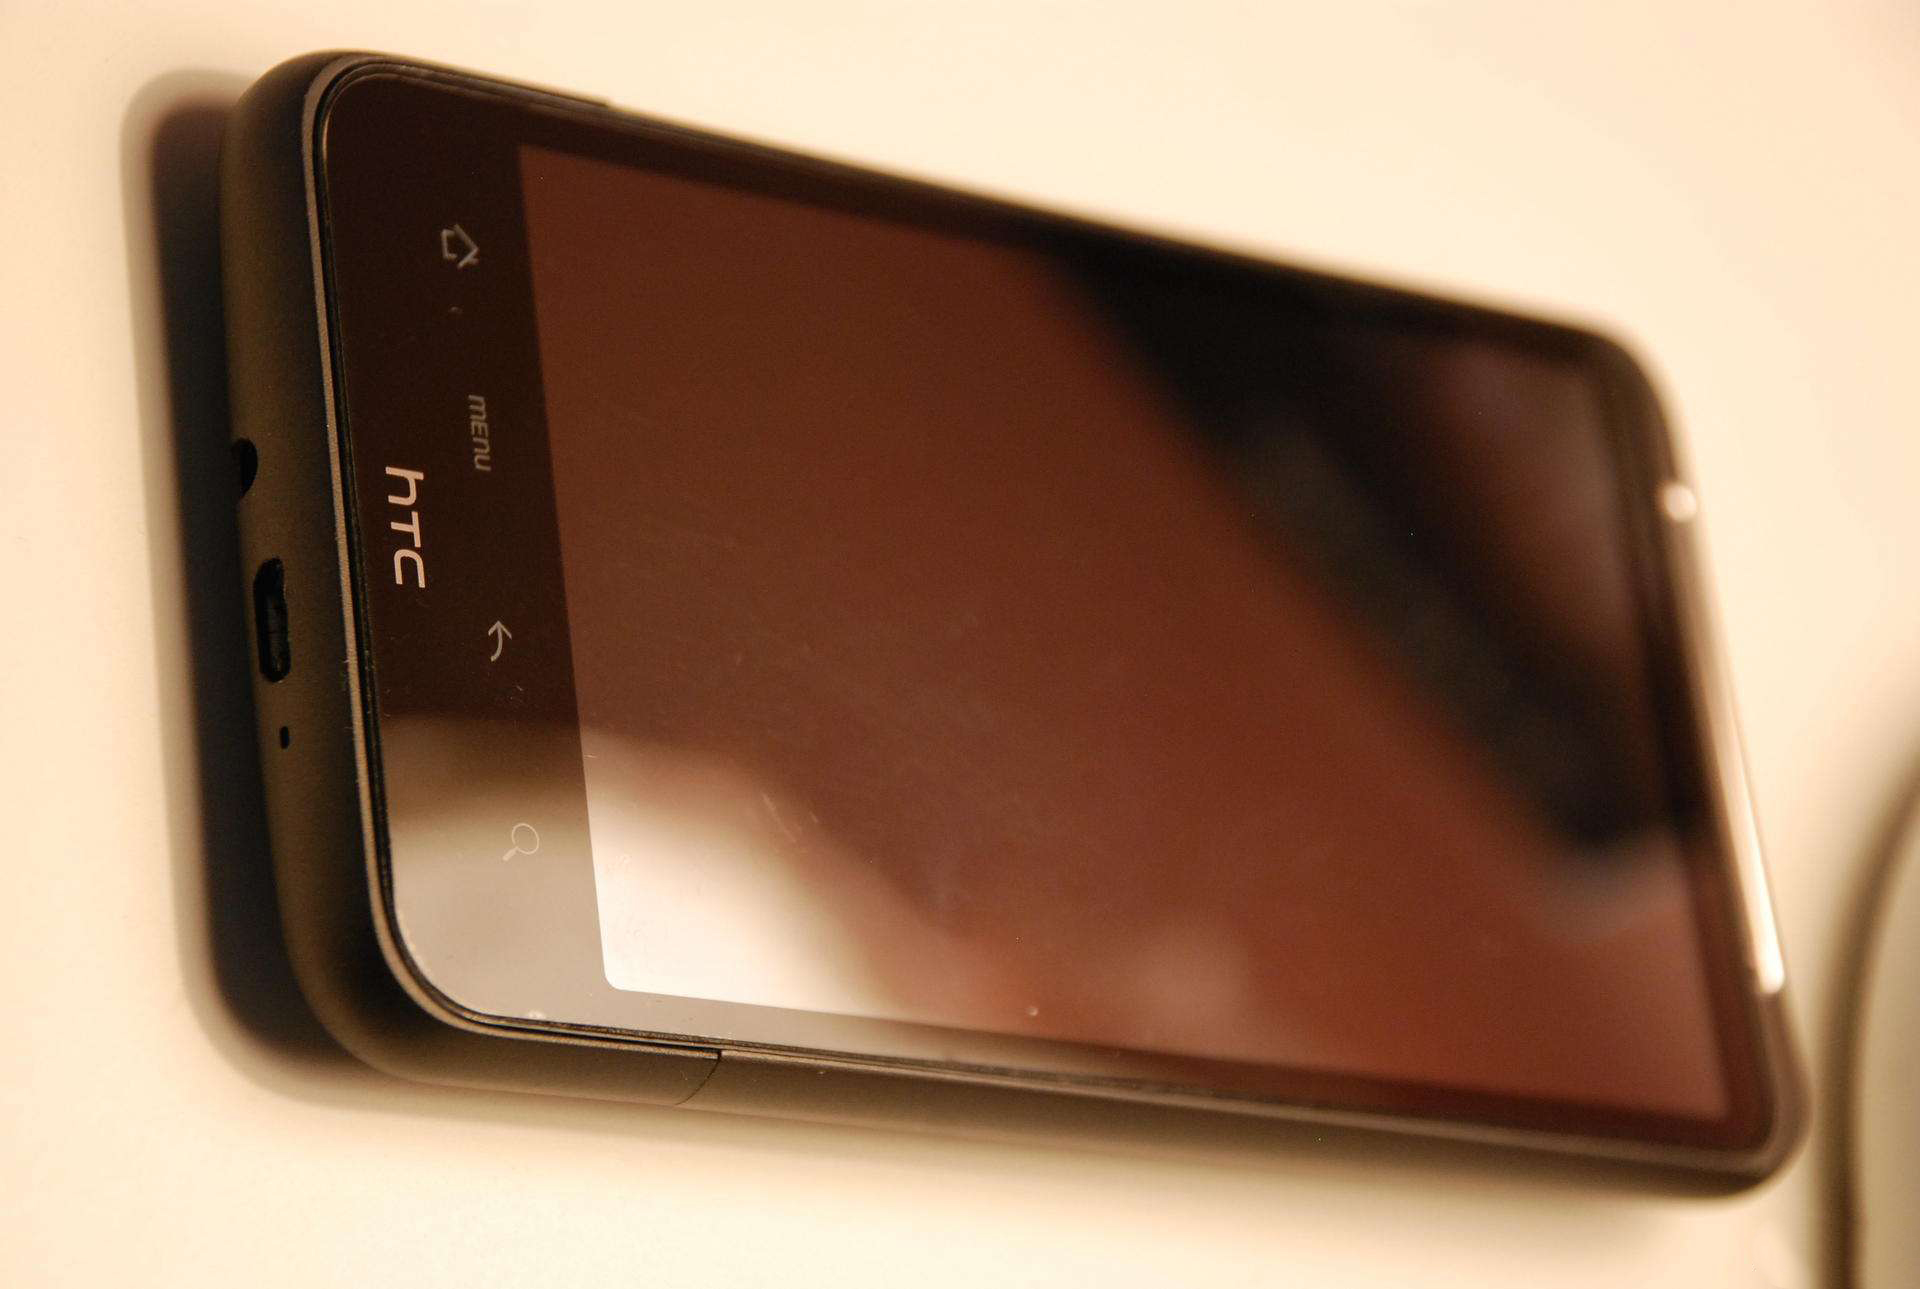 HTC四台經典的安卓机，之后还能再创佳绩吗？